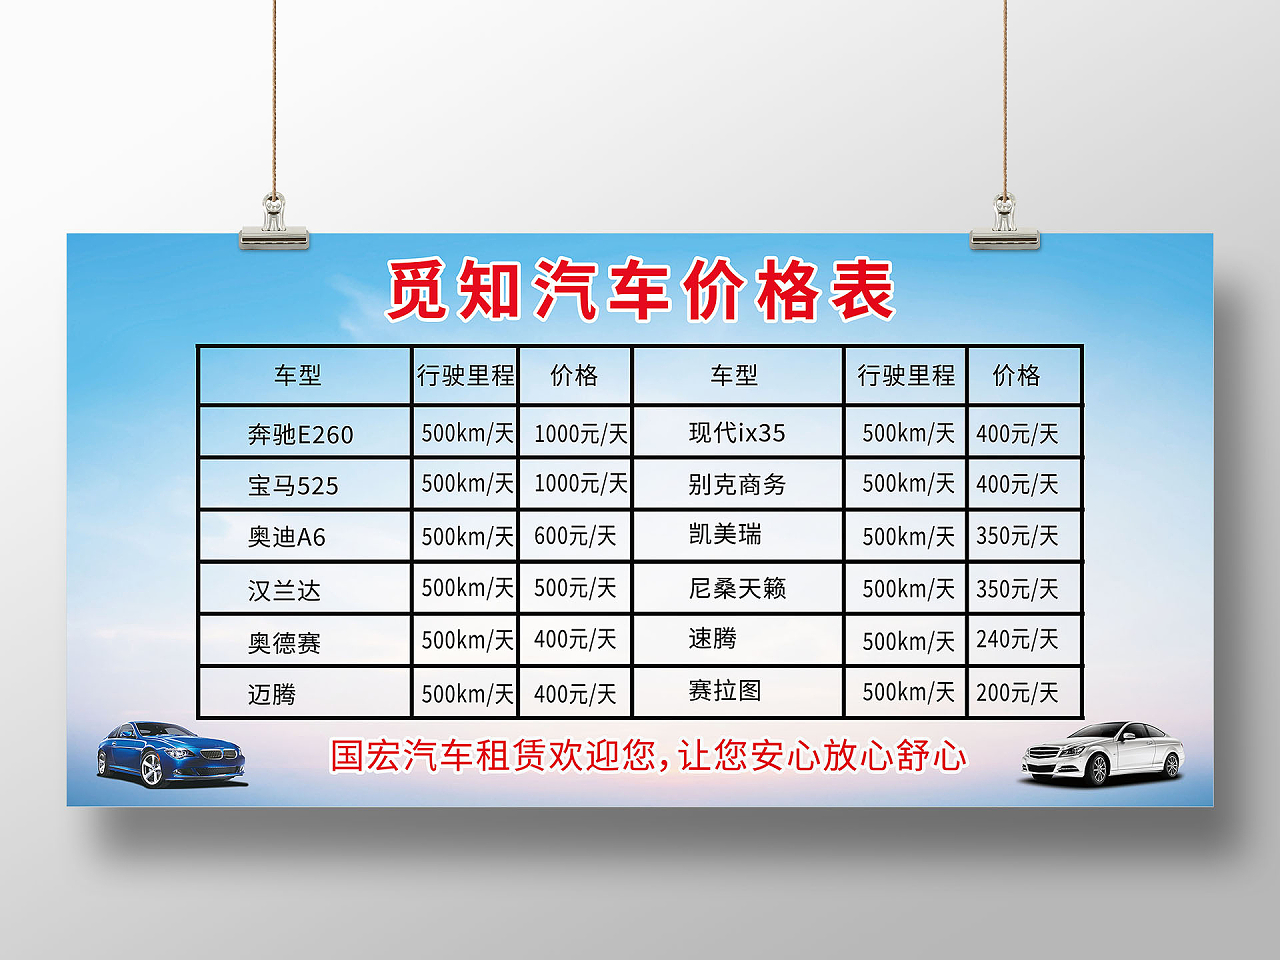 精细洗车爱车养护汽车美容价目表模板设计汽车价格表